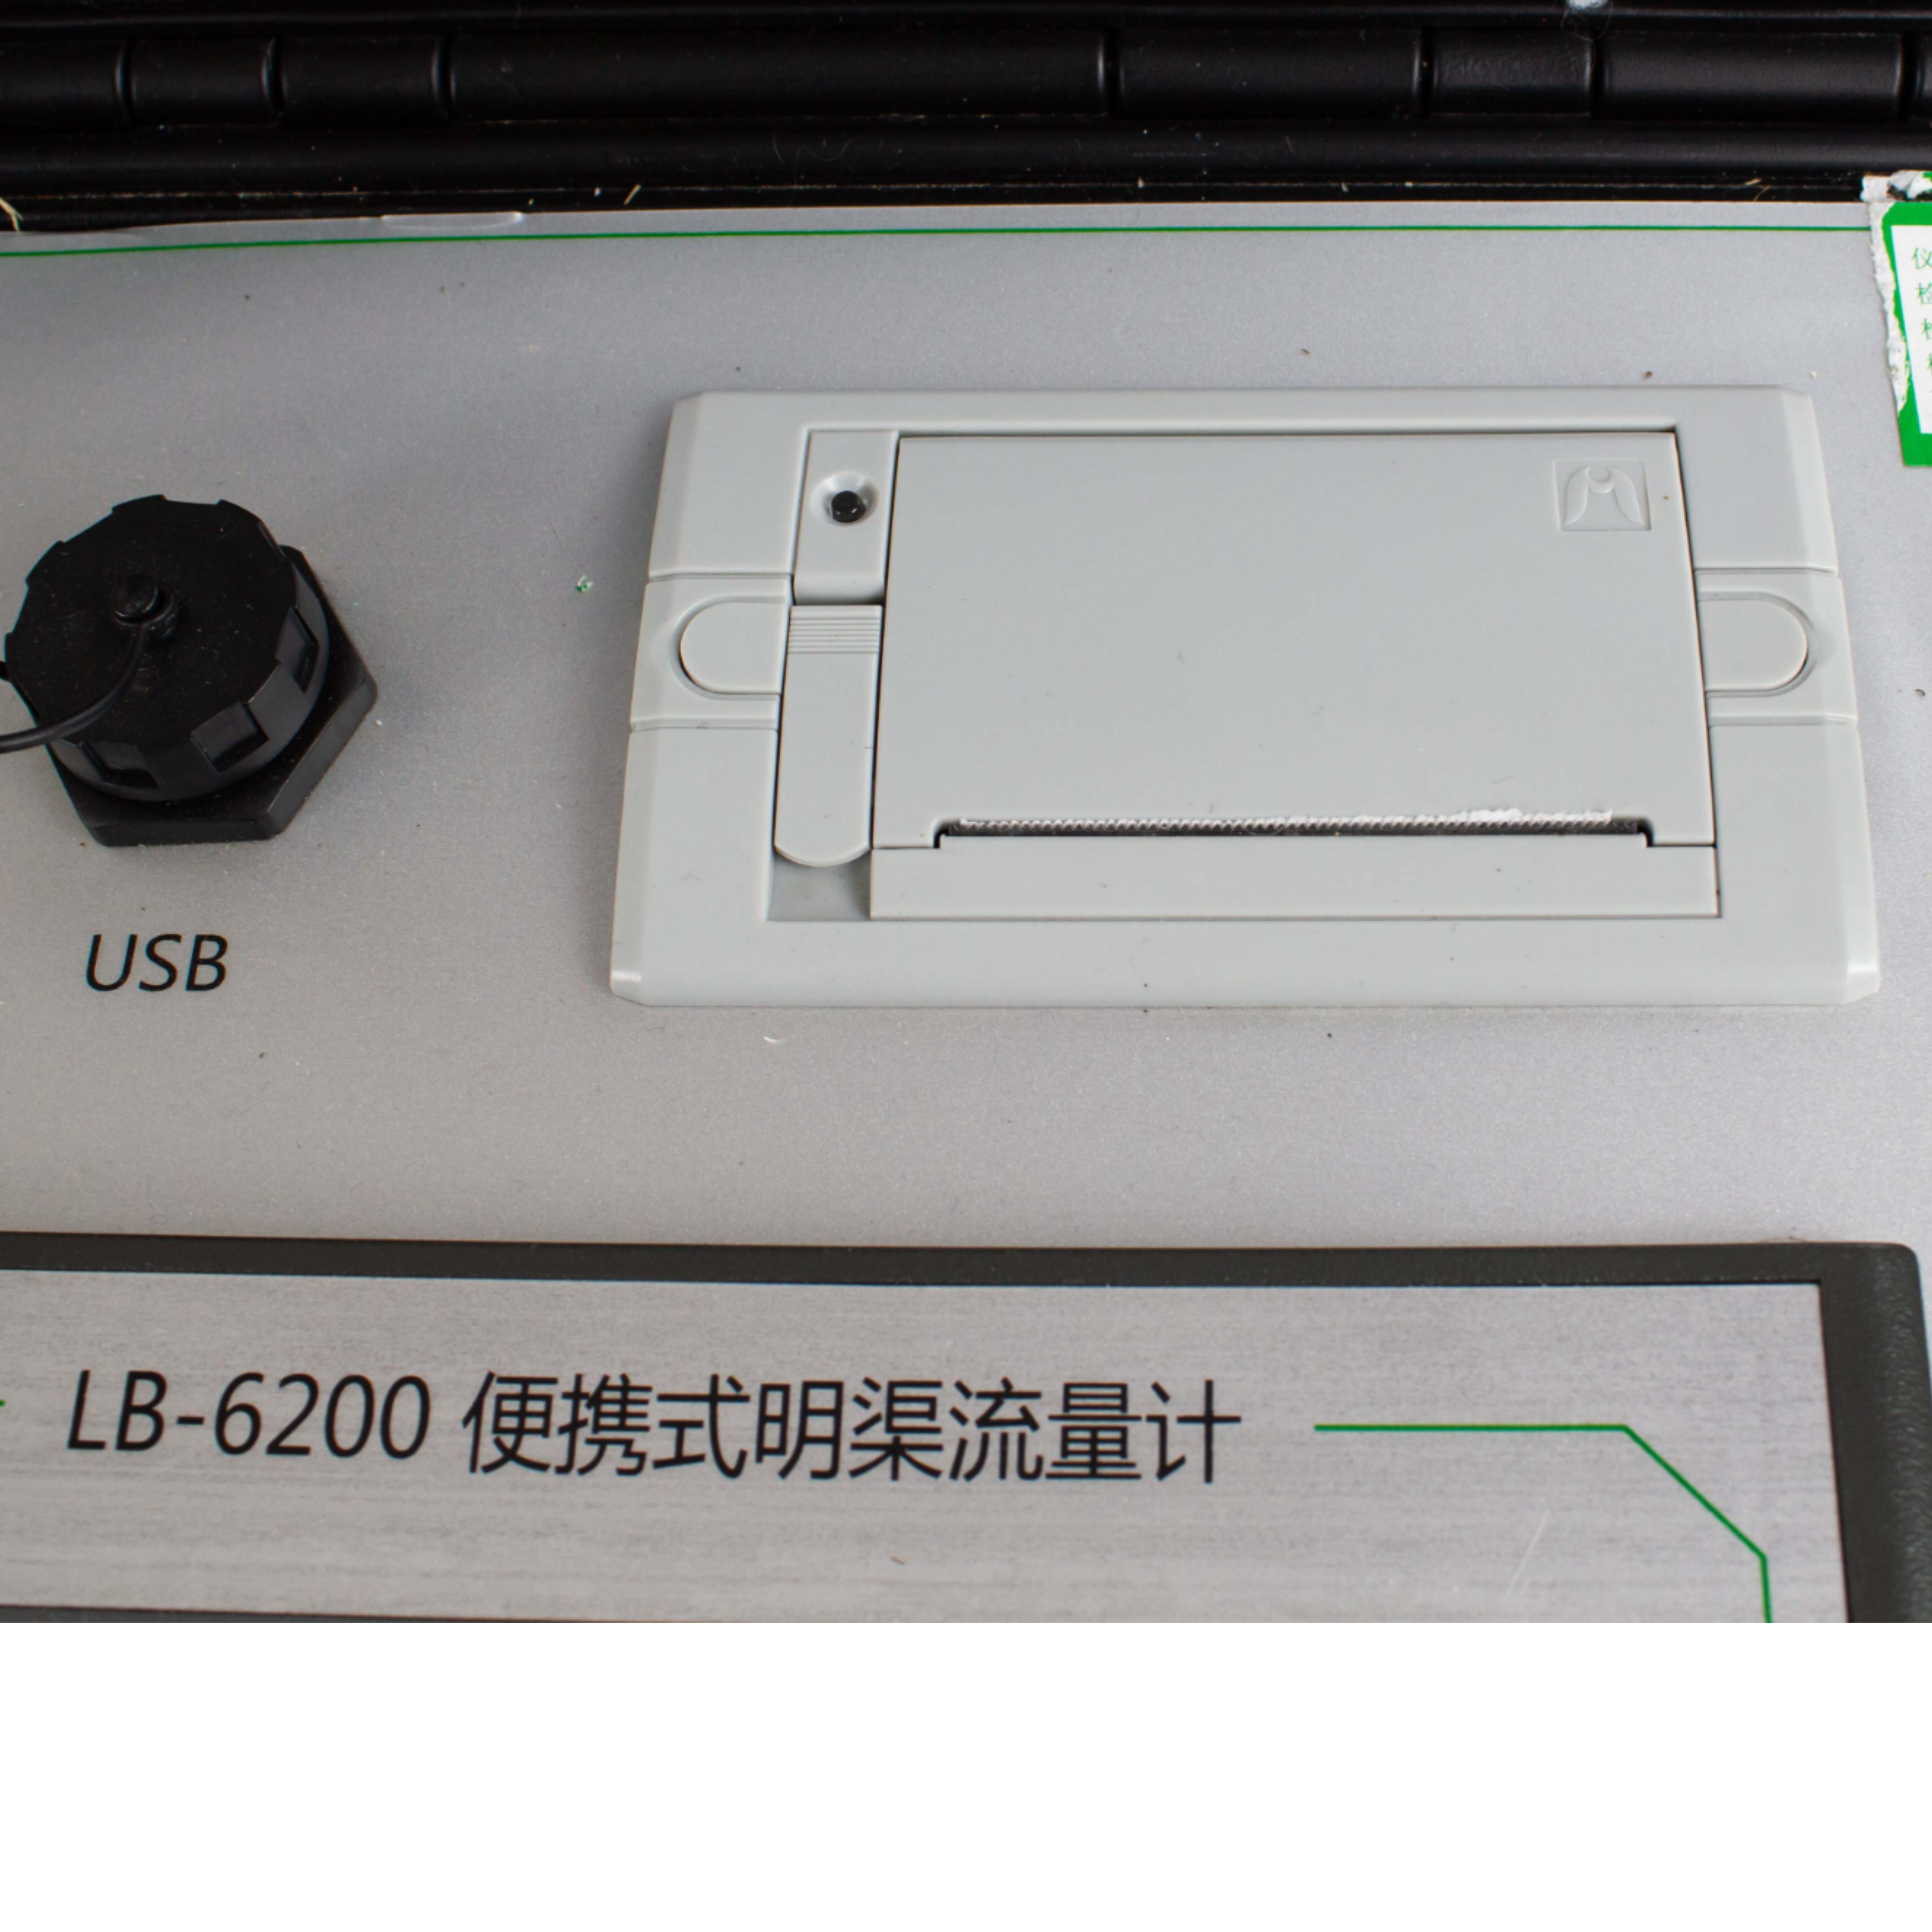 路博LB-6201型便携式磁致伸缩明渠流量计